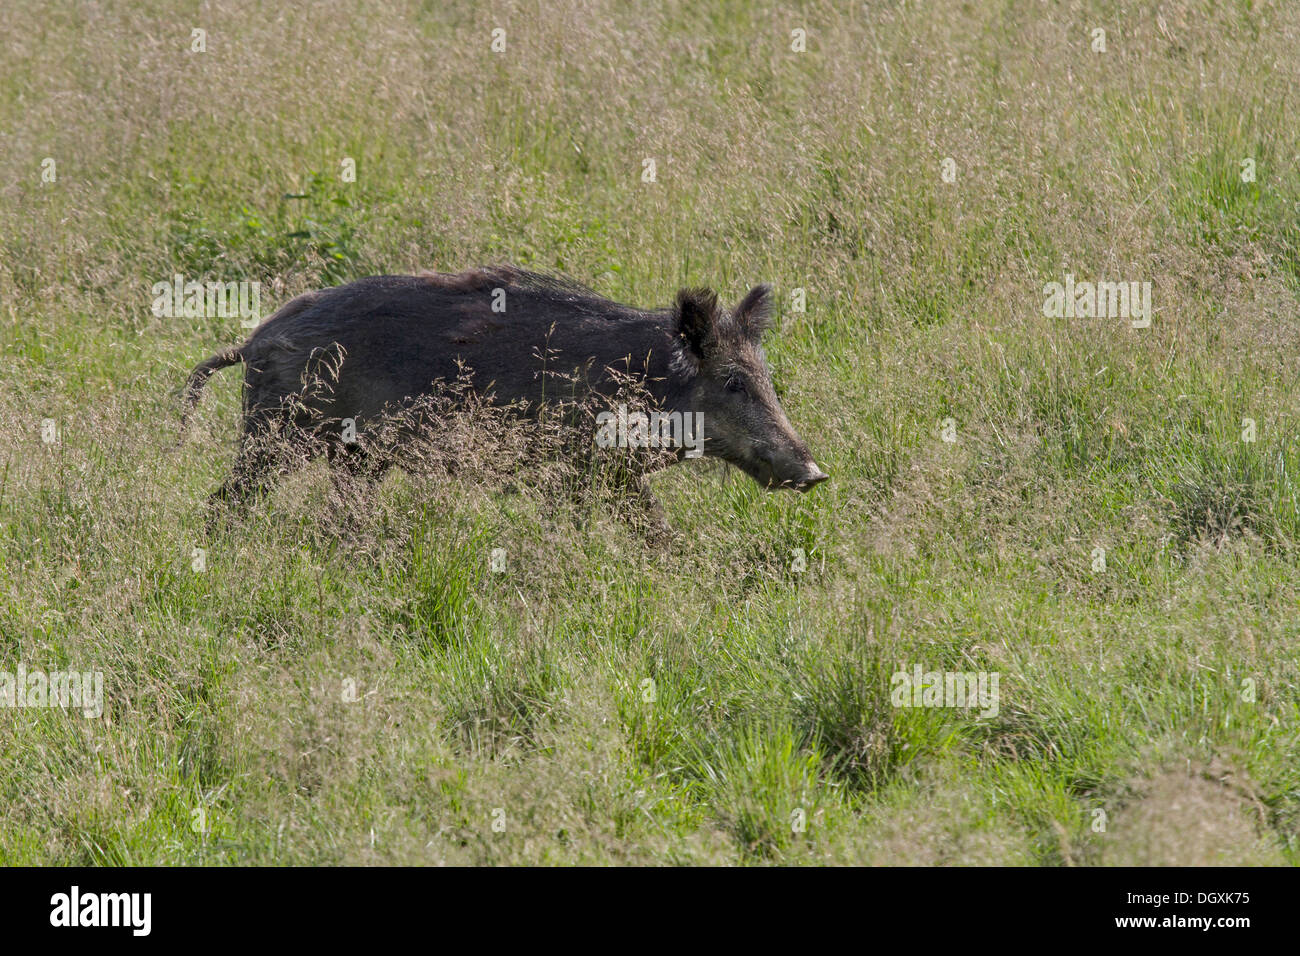 Wild boar in a meadow / Sus scrofa Stock Photo